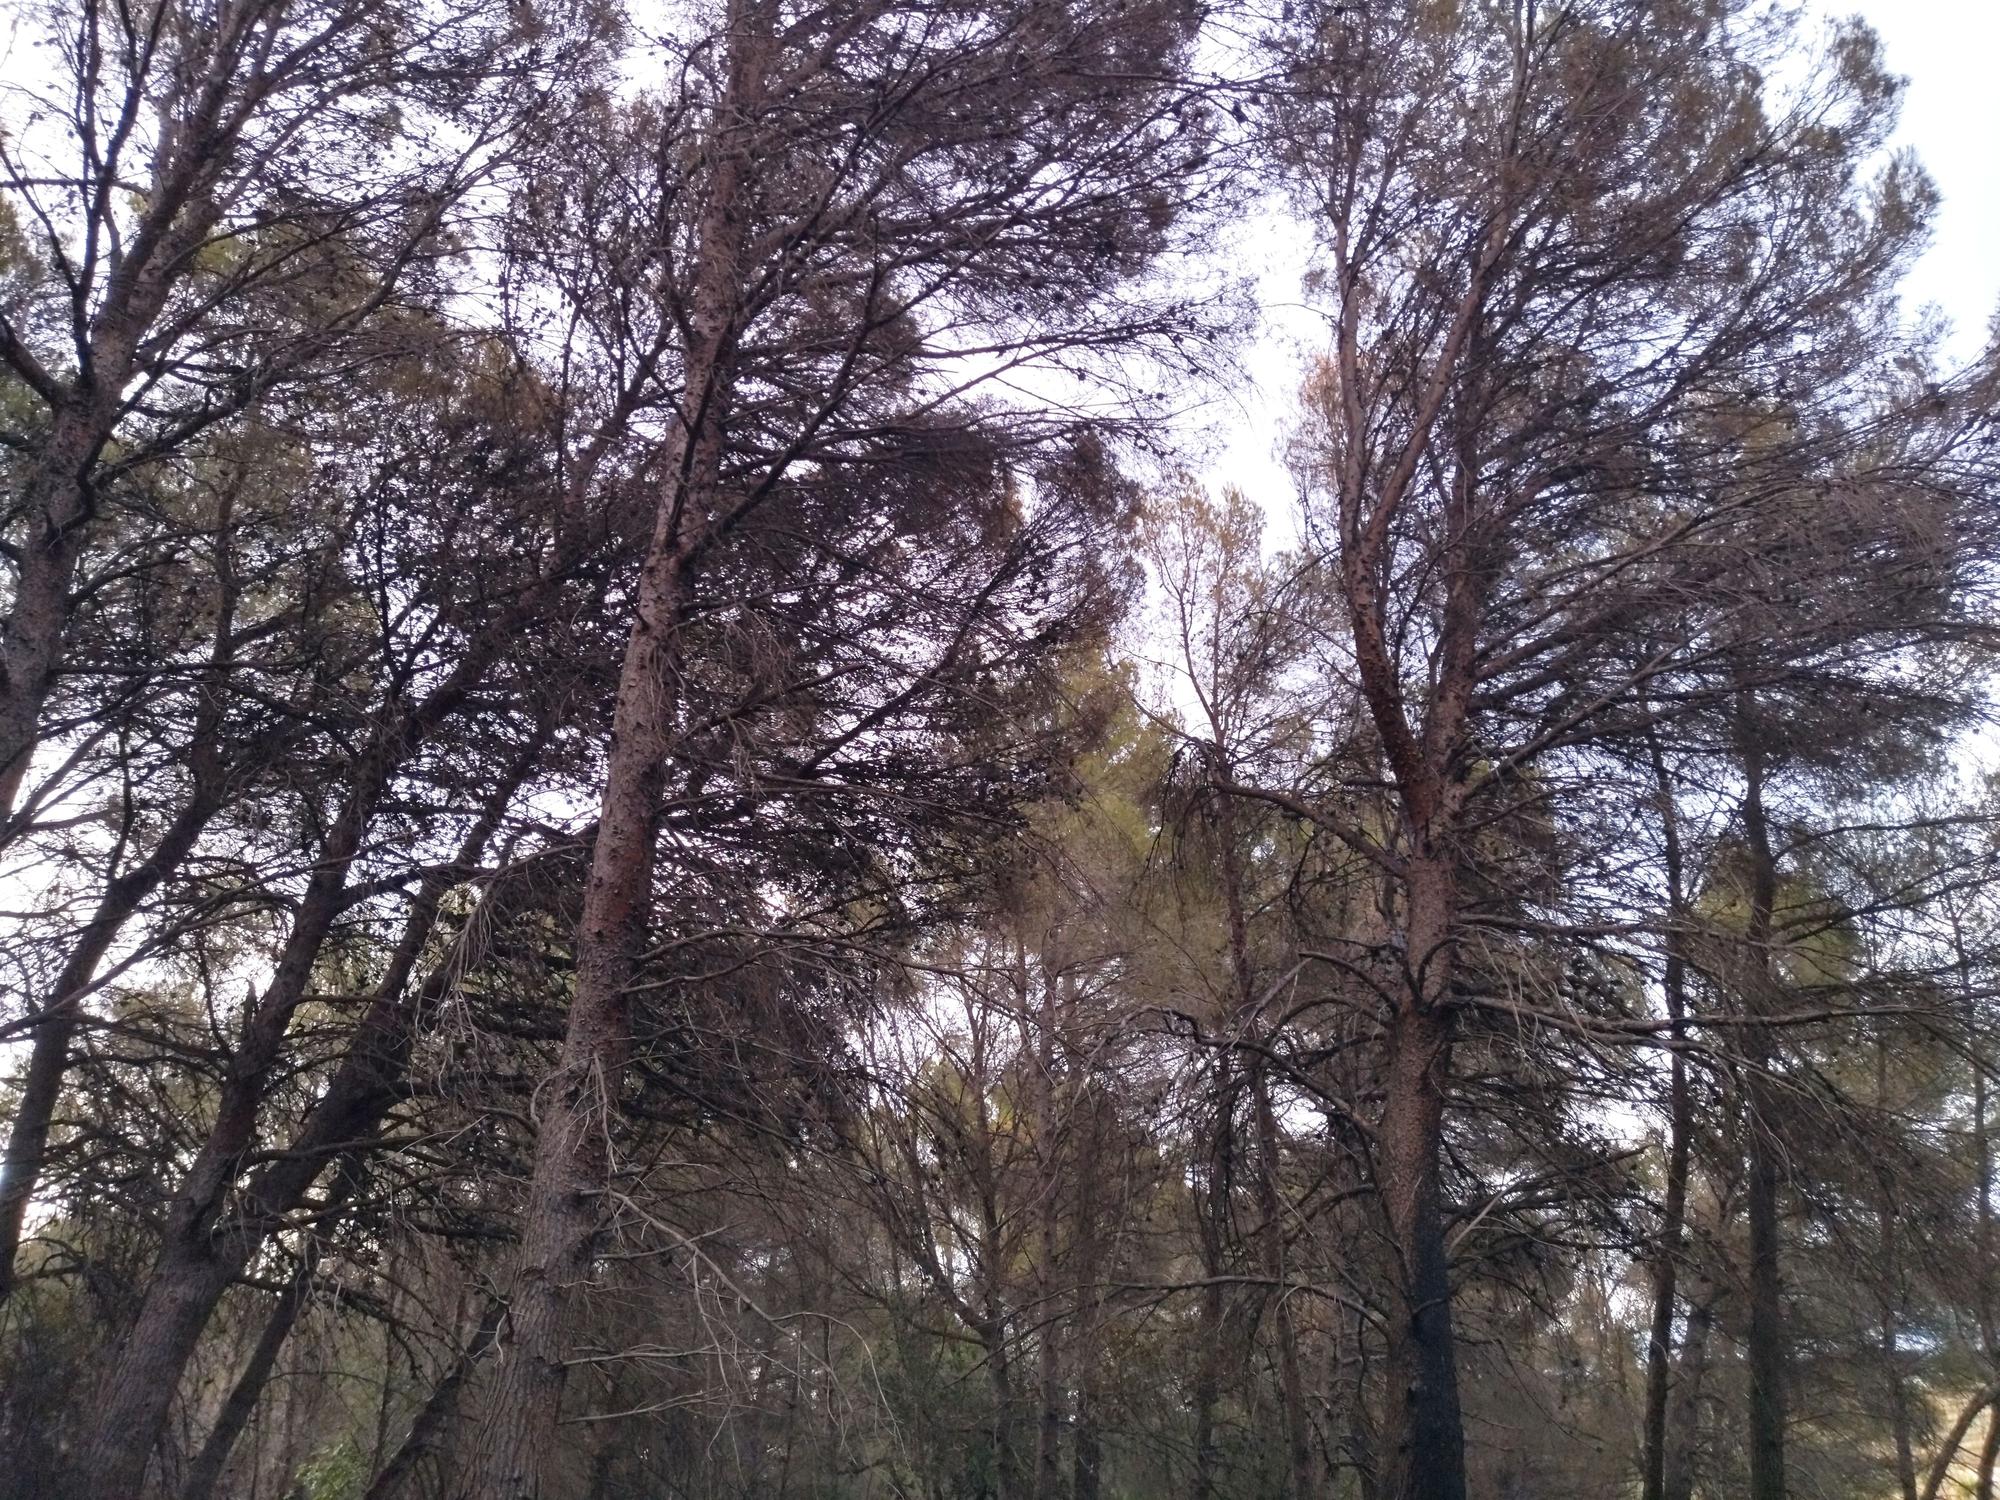 La lluvia refresca el bosque calcinado por el enésimo incendio en el Montgó